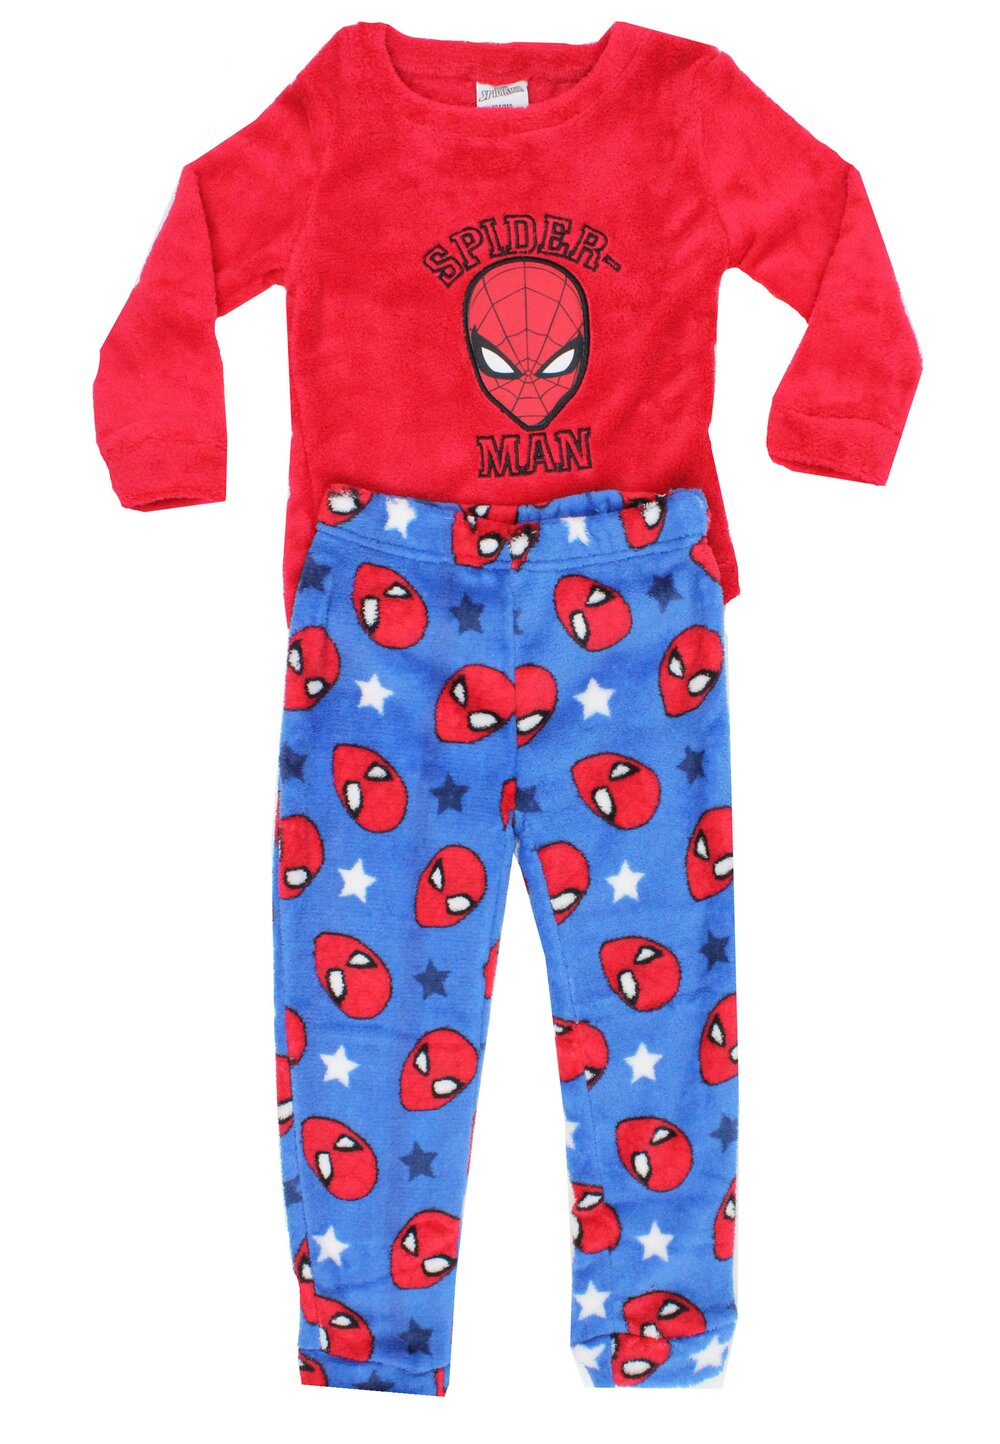 Pijama maneca lunga, pluss din poliester, Spider Man, rosie baieti